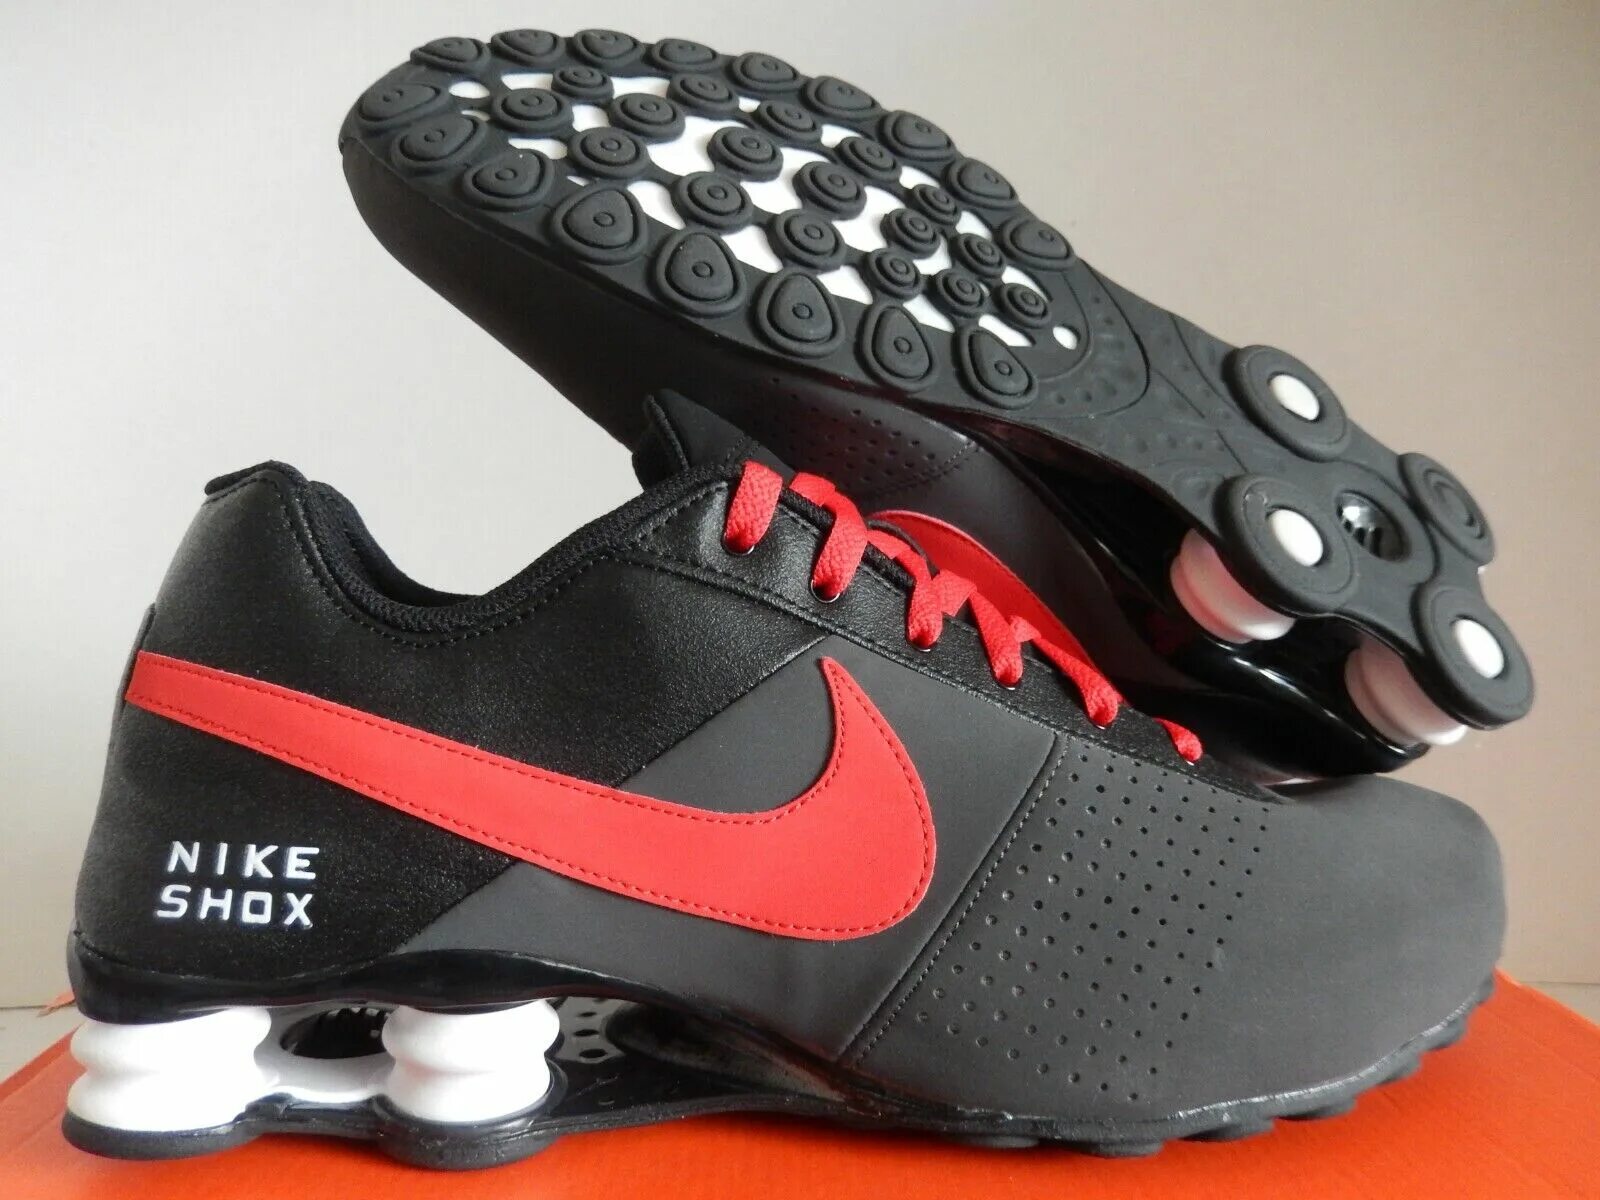 Найк шокс. Nike Shox deliver. Nike Shox Black Red. Nike Shox White Red. Найком стоимость